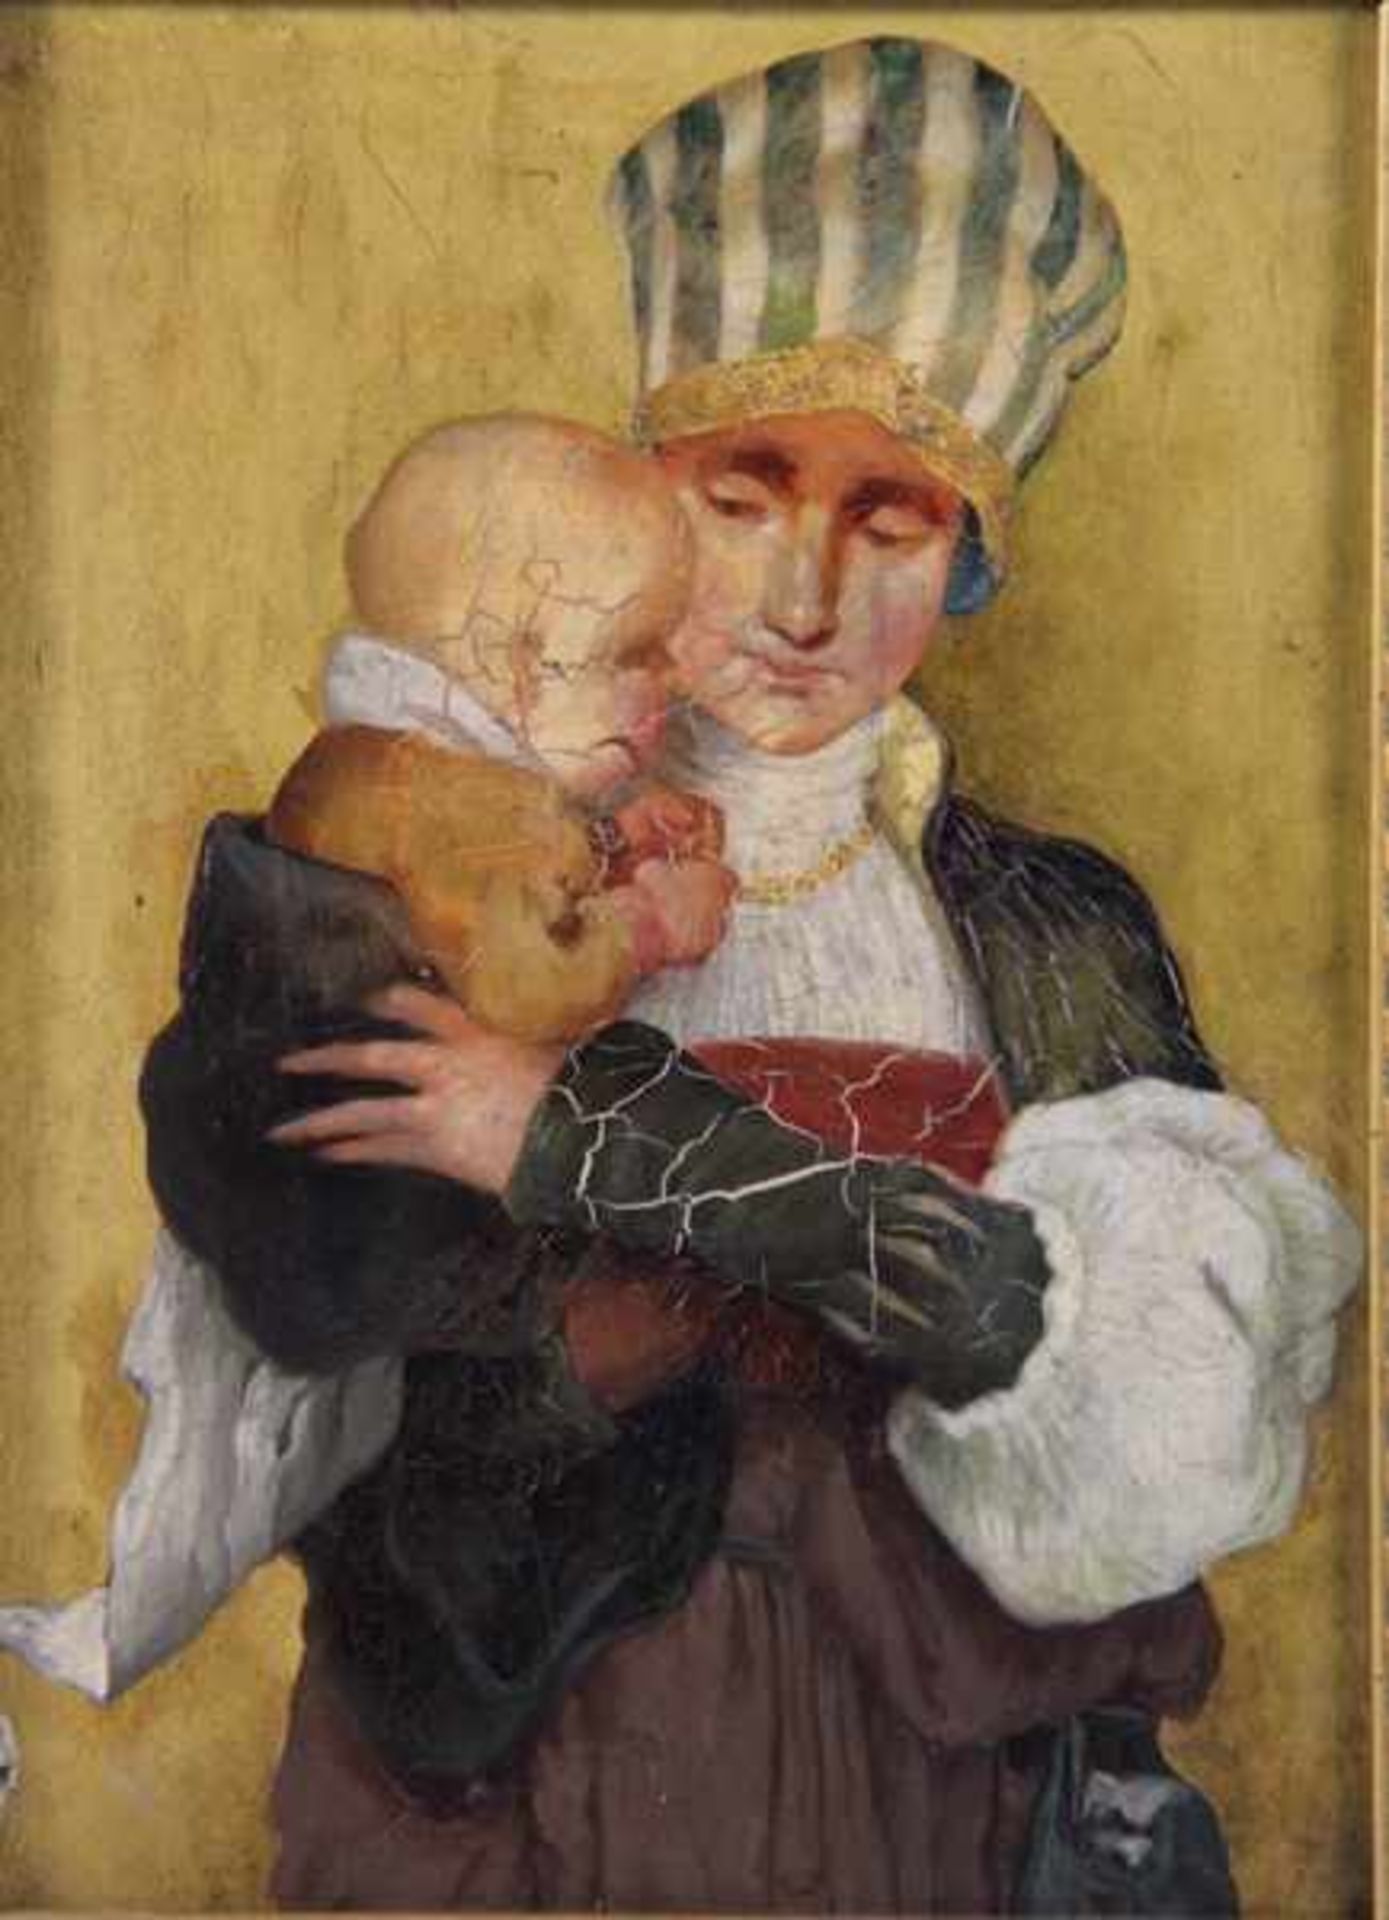 Unbekannter Künstler19. Jhd., Frau in edler Tracht, einen Säugling auf dem Arm, goldfarbener